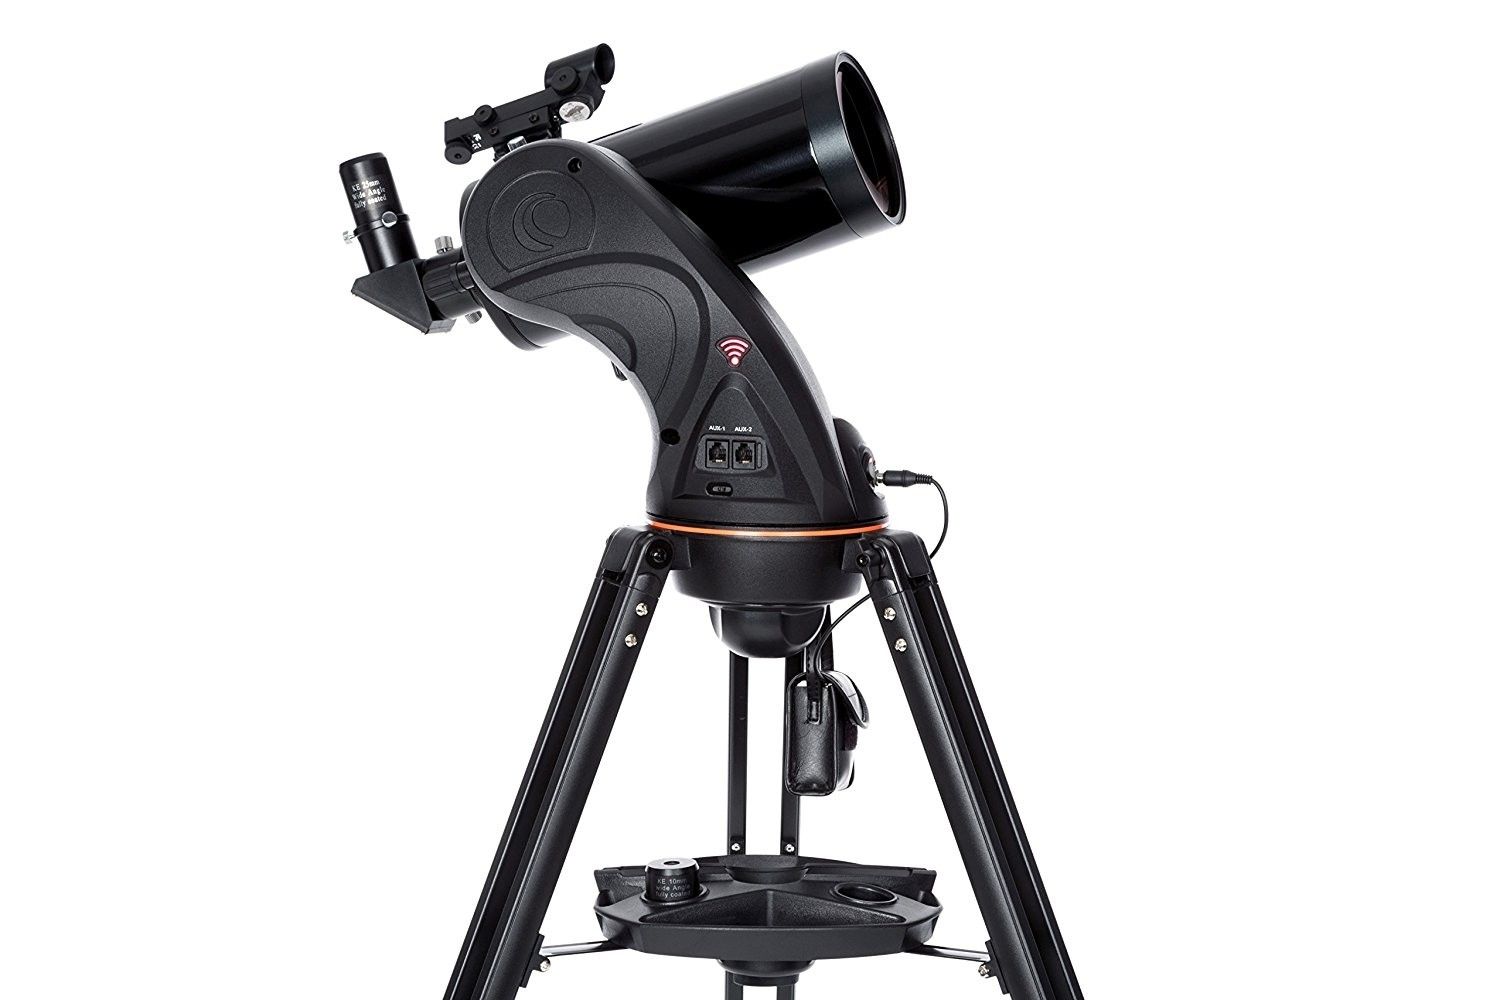 Celestron 102mm Astro-Fi Maksutov-Cassegrain Telescope 22202